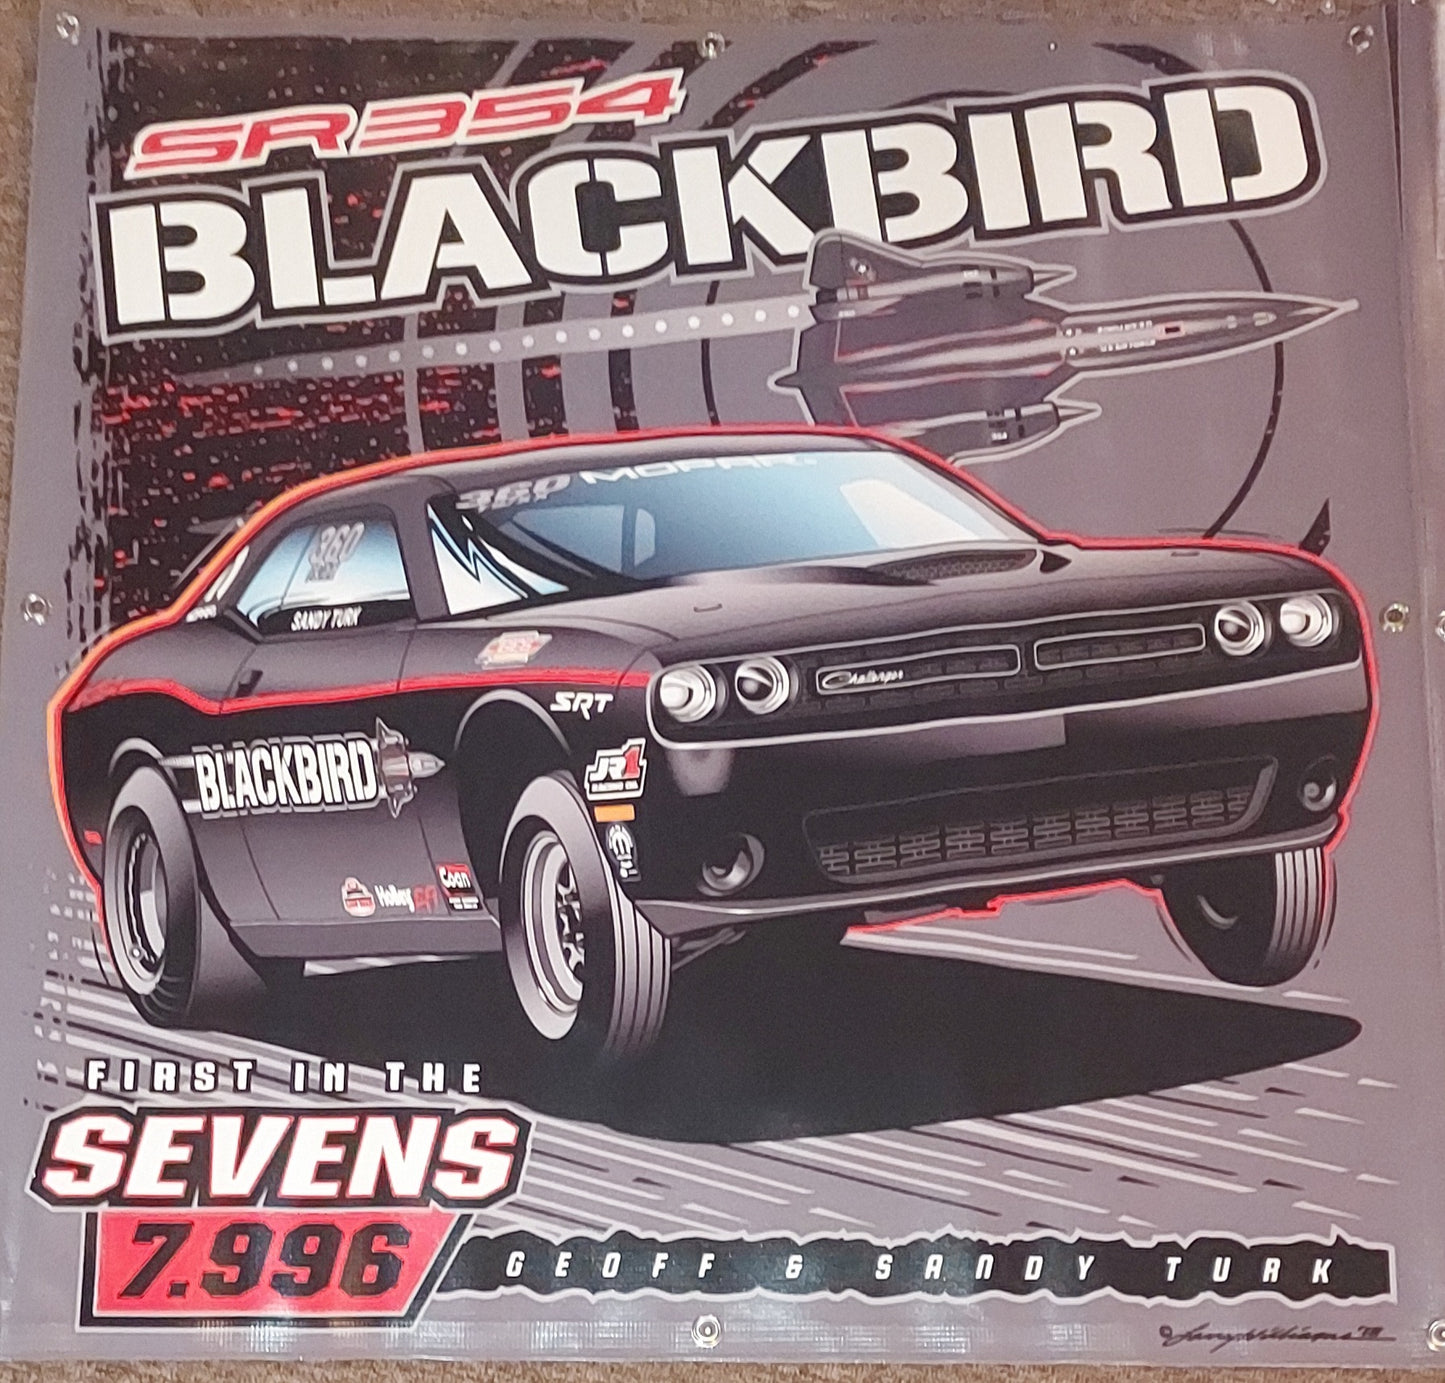 Geoff Turk Blackbird Challenger Vinyl Banner